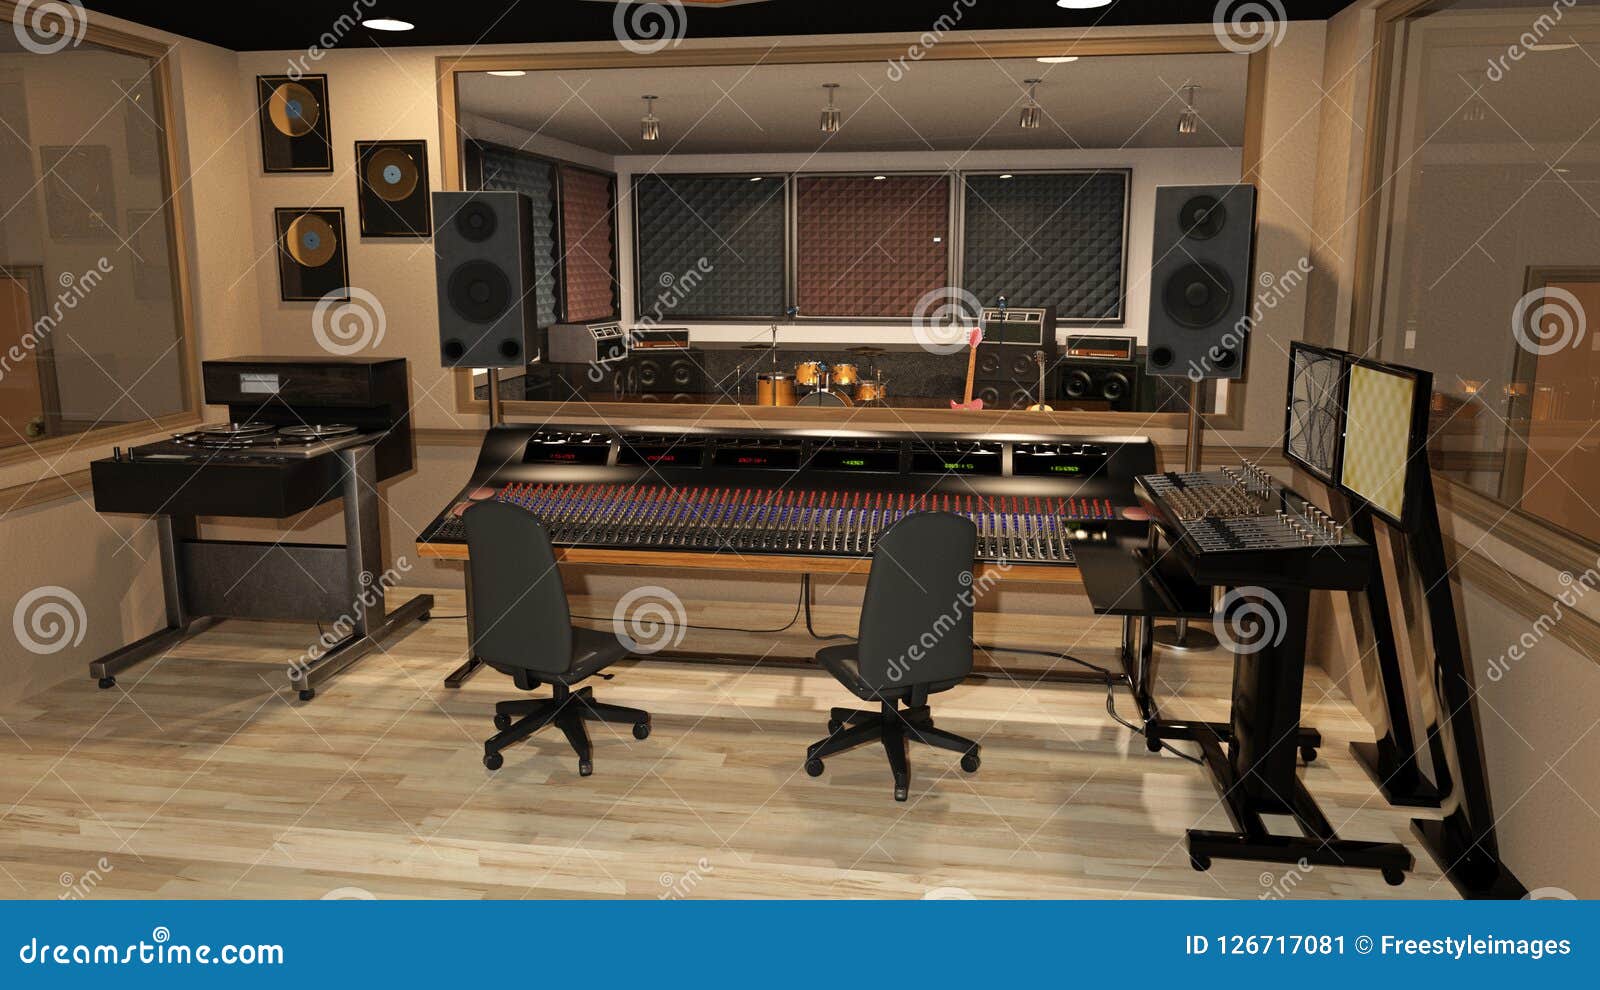 studio sound speakers